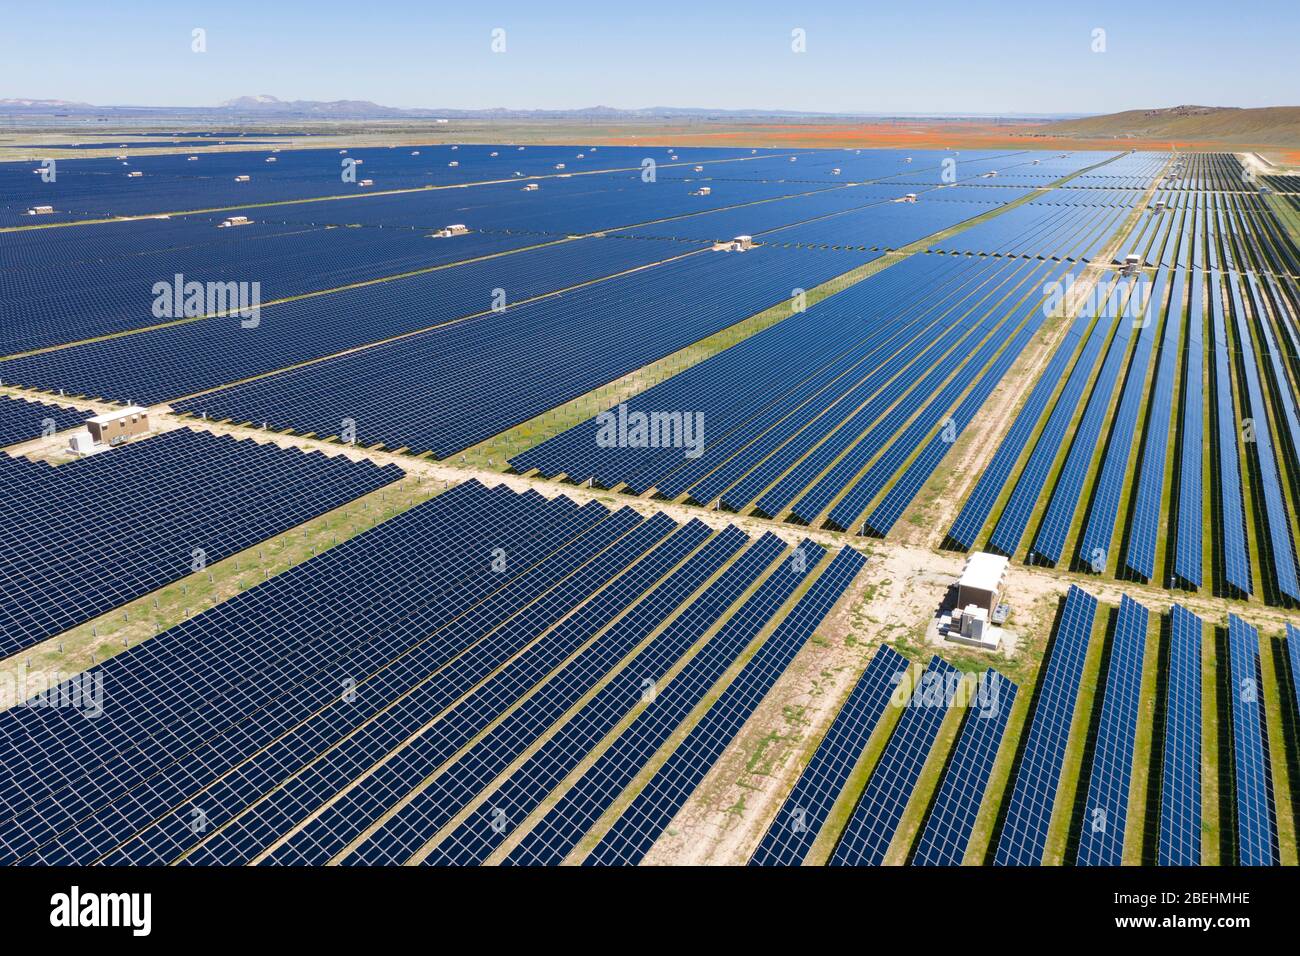 Vue aérienne du ranch solaire solaire photovoltaïque (PV) vert dans la vallée de l'Antelope dans le désert de Mojave en Californie Banque D'Images